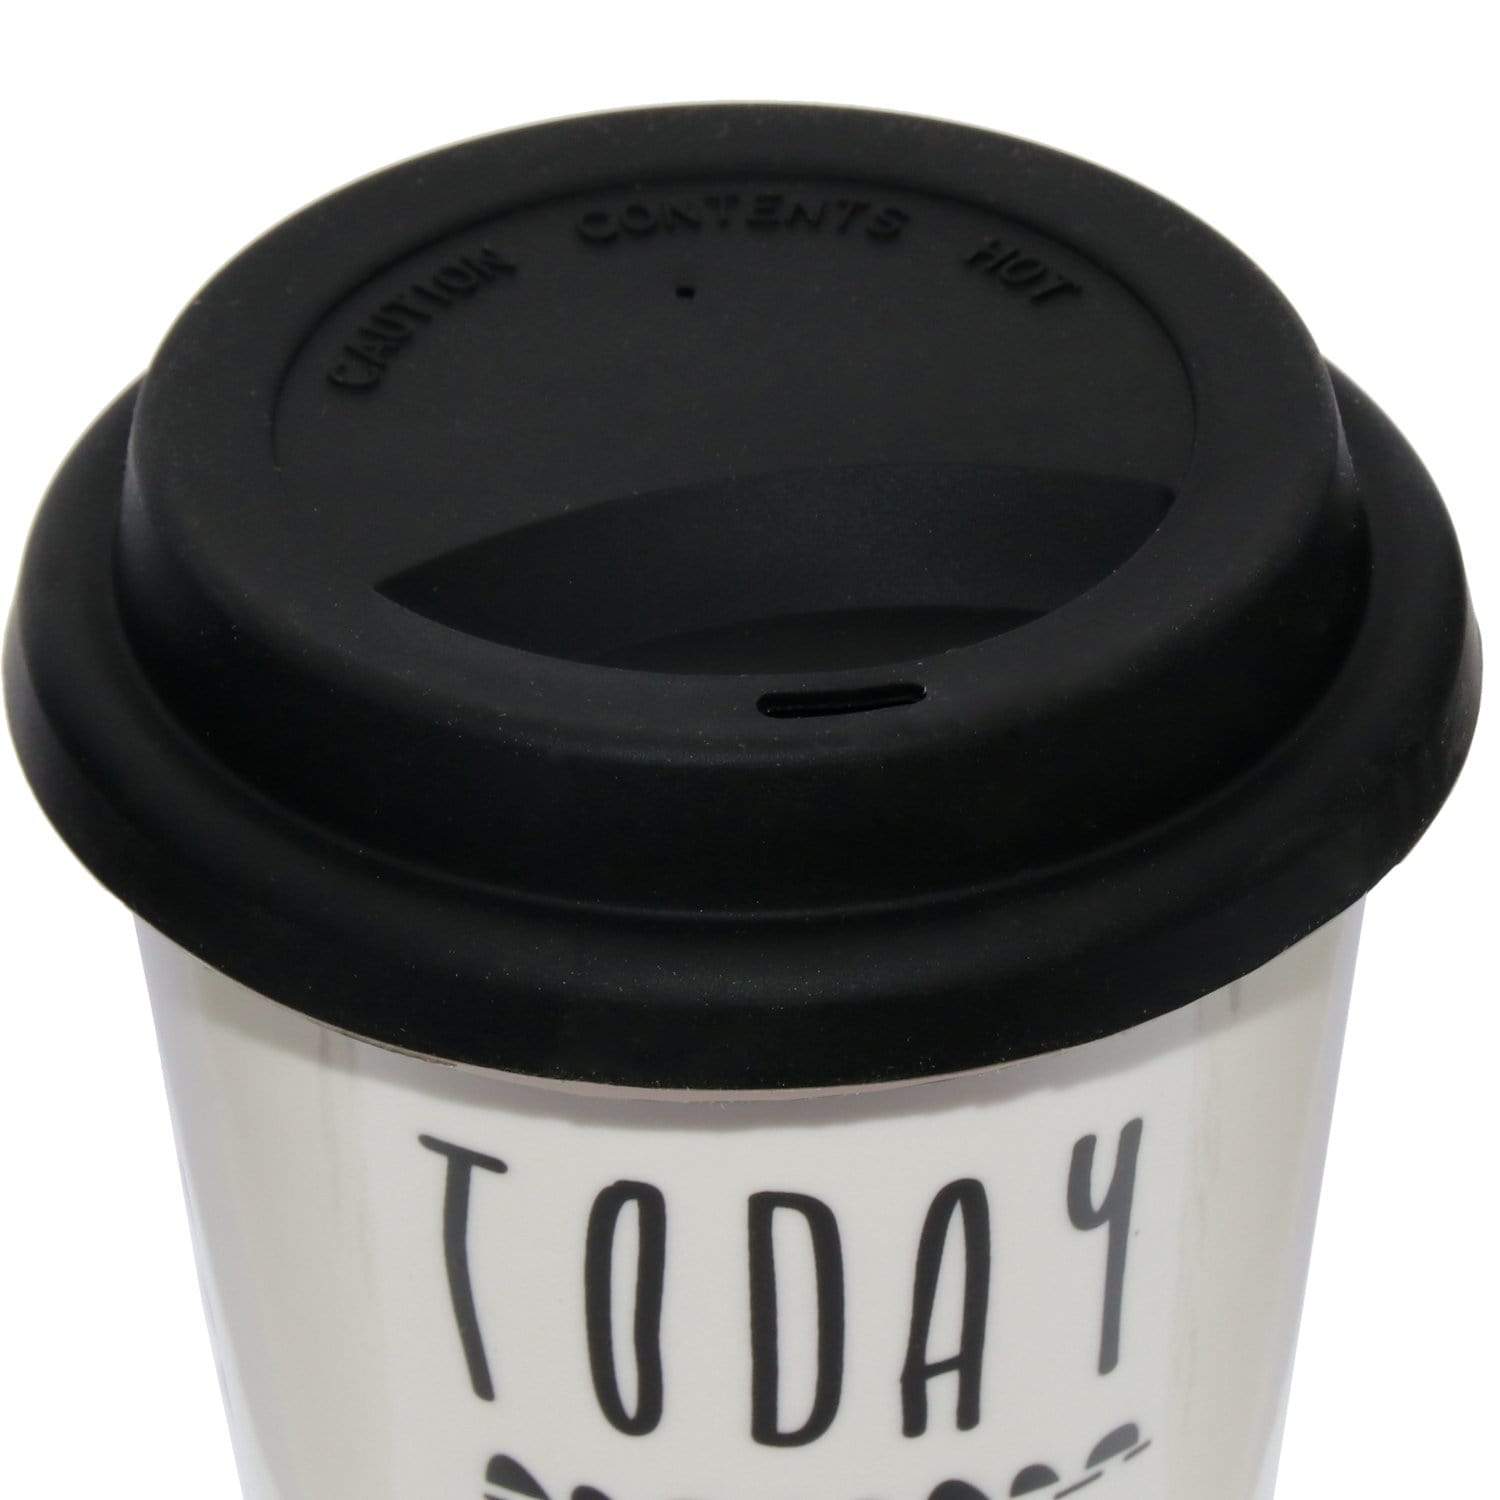 Travel mug tazza termica con tappo in silicone porcellana bianca e fra -  Dolci pensieri gift